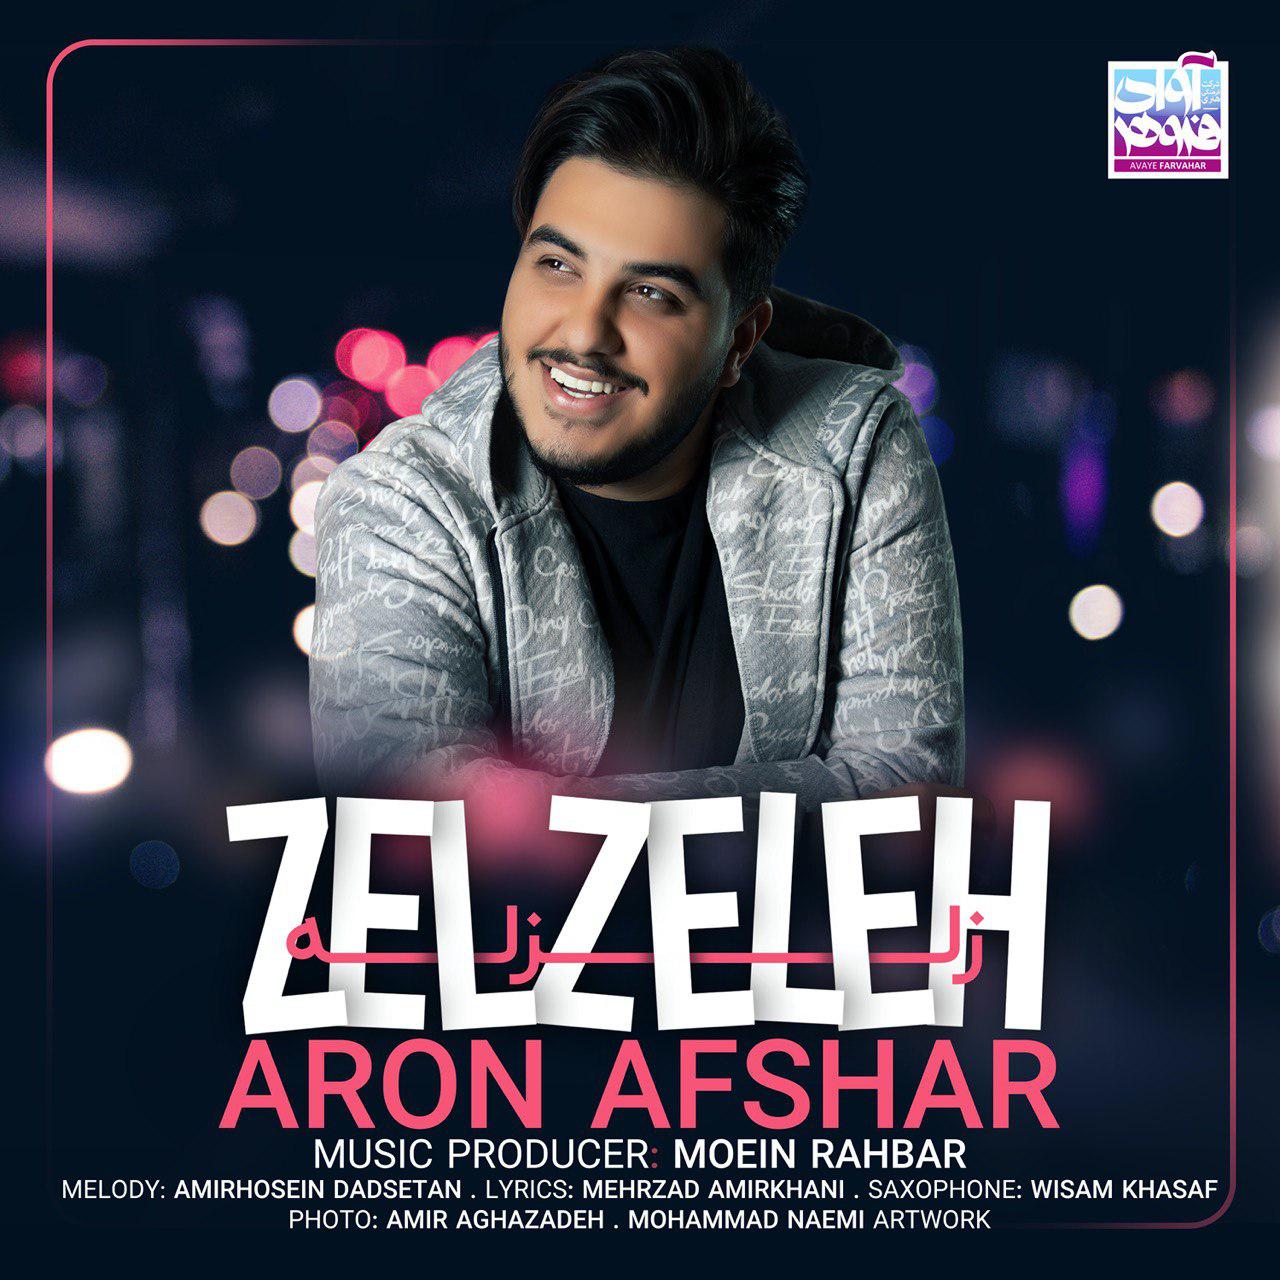 Aron Afshar – Zelzeleh